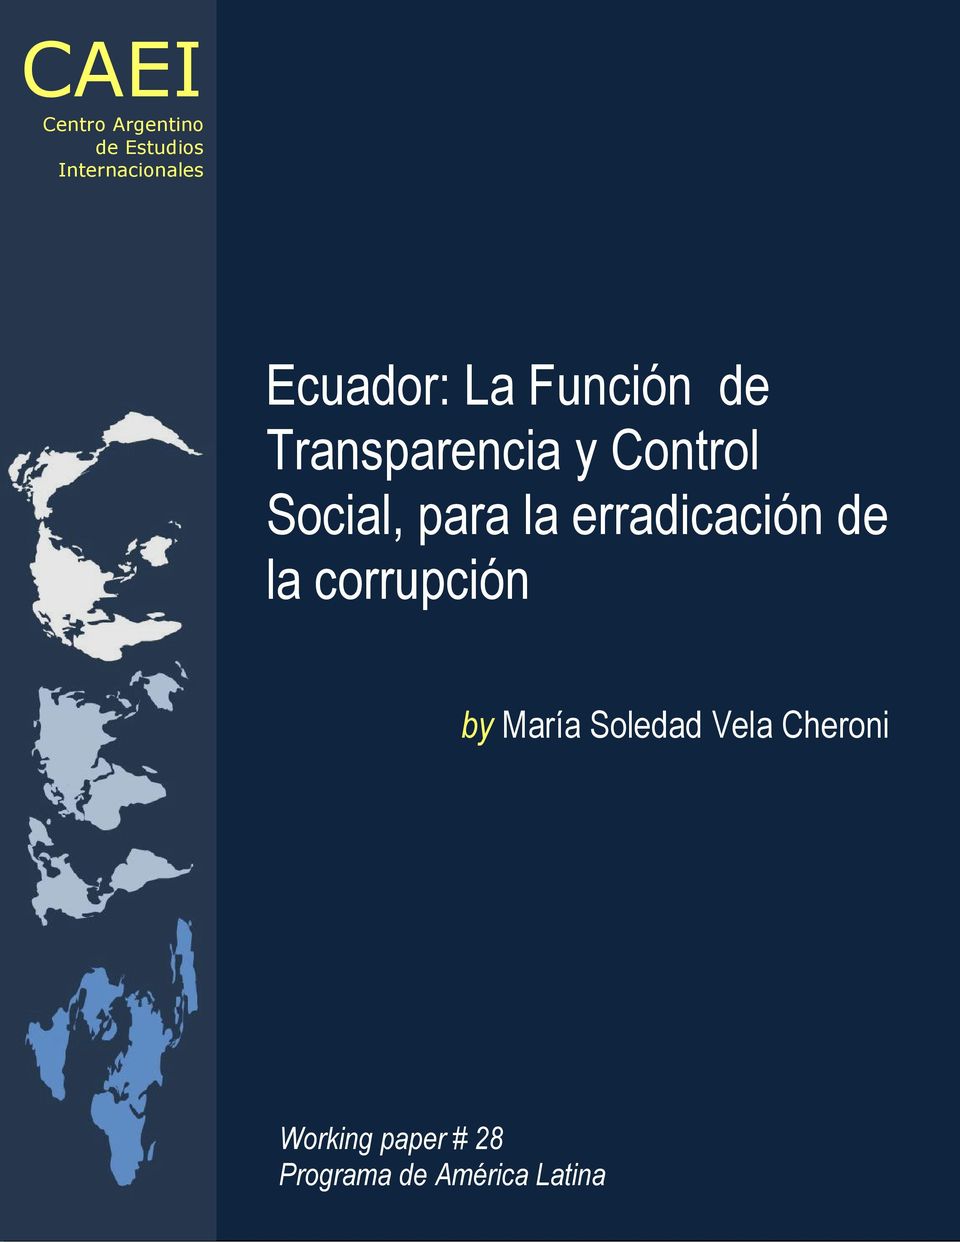 de la corrupción by María Soledad Vela Cheroni Working paper #